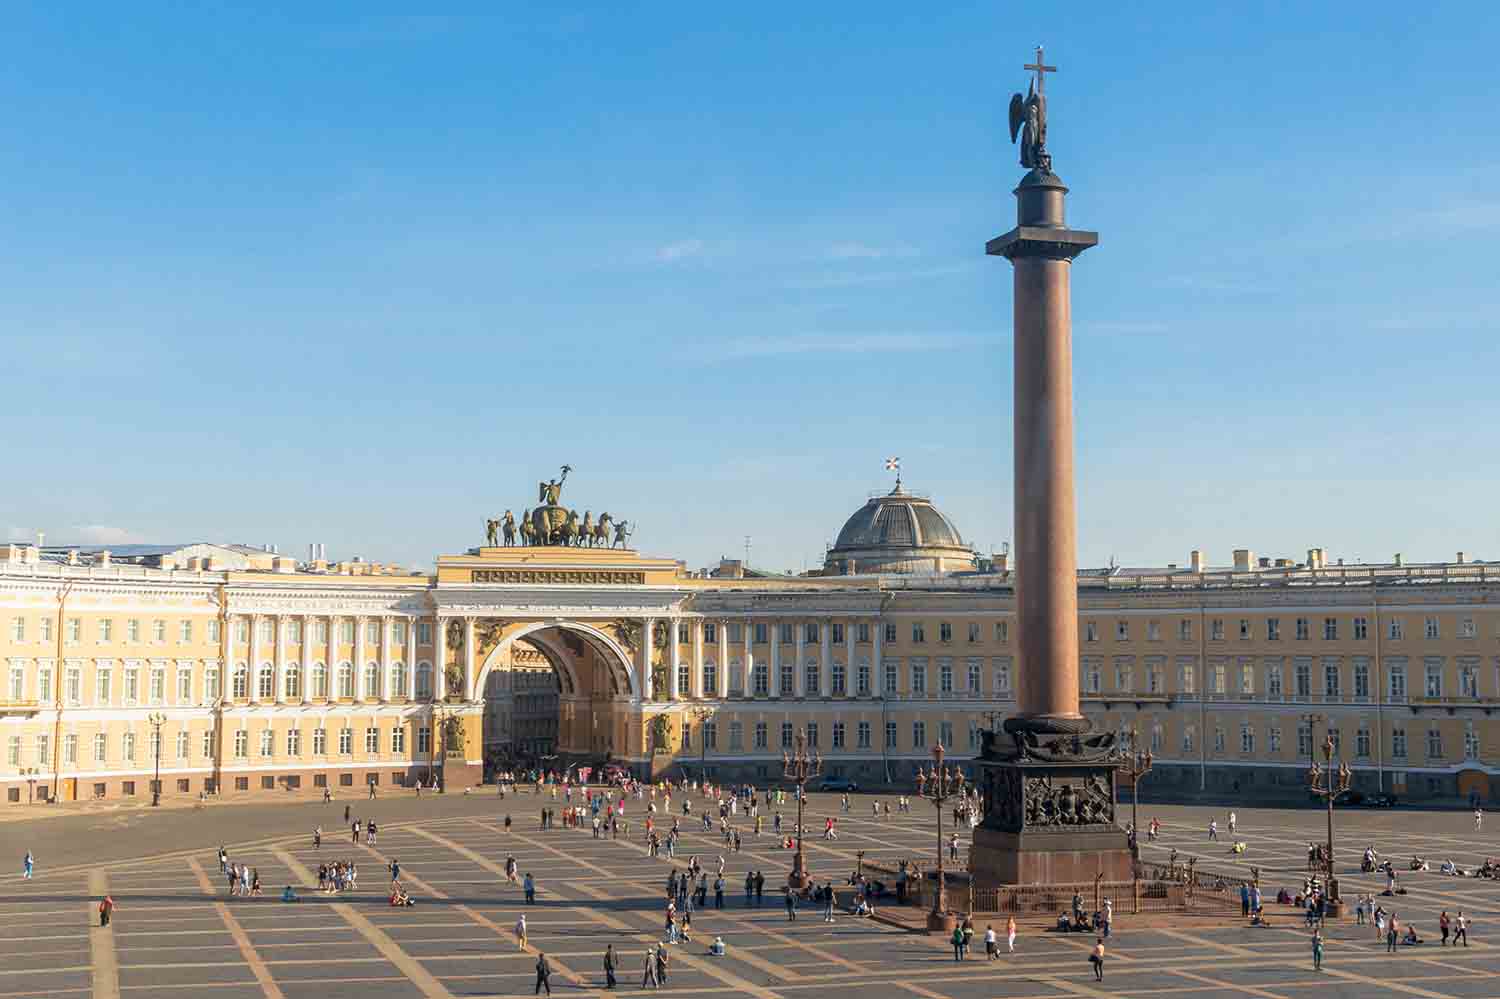 Дворцовая площадь в центре Петербурга – визитка города